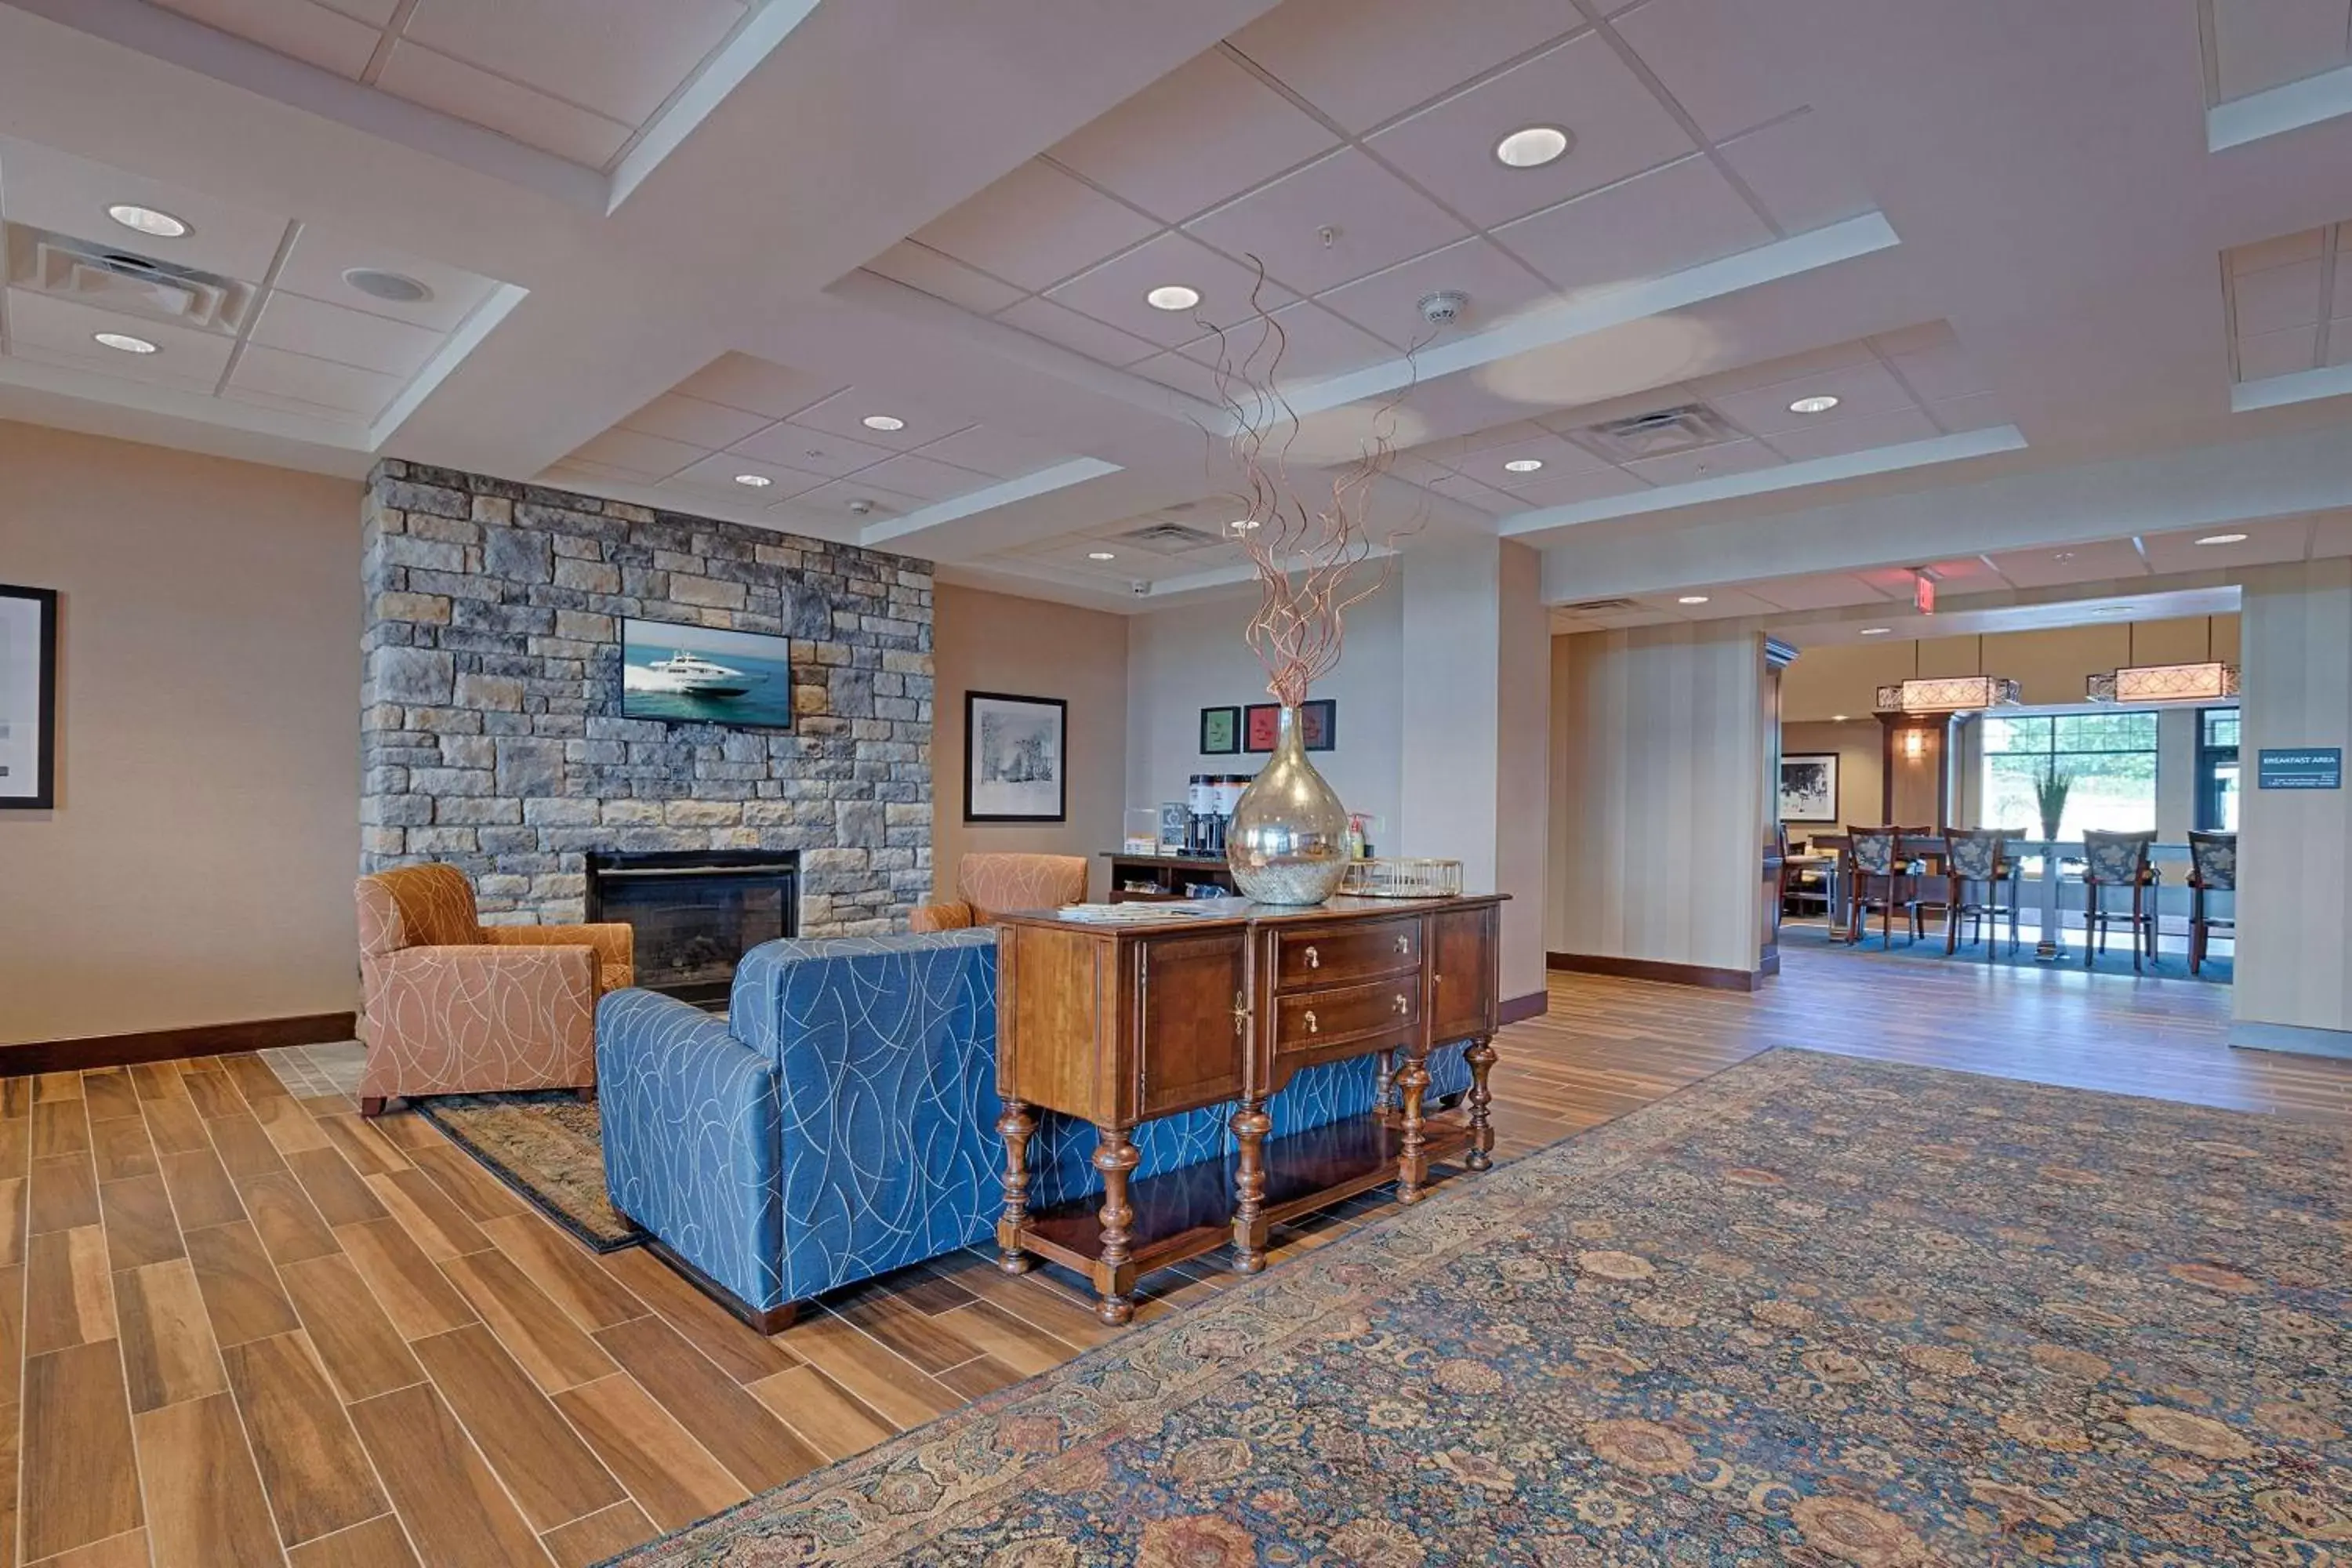 Lobby or reception in Hampton Inn & Suites Cazenovia, NY